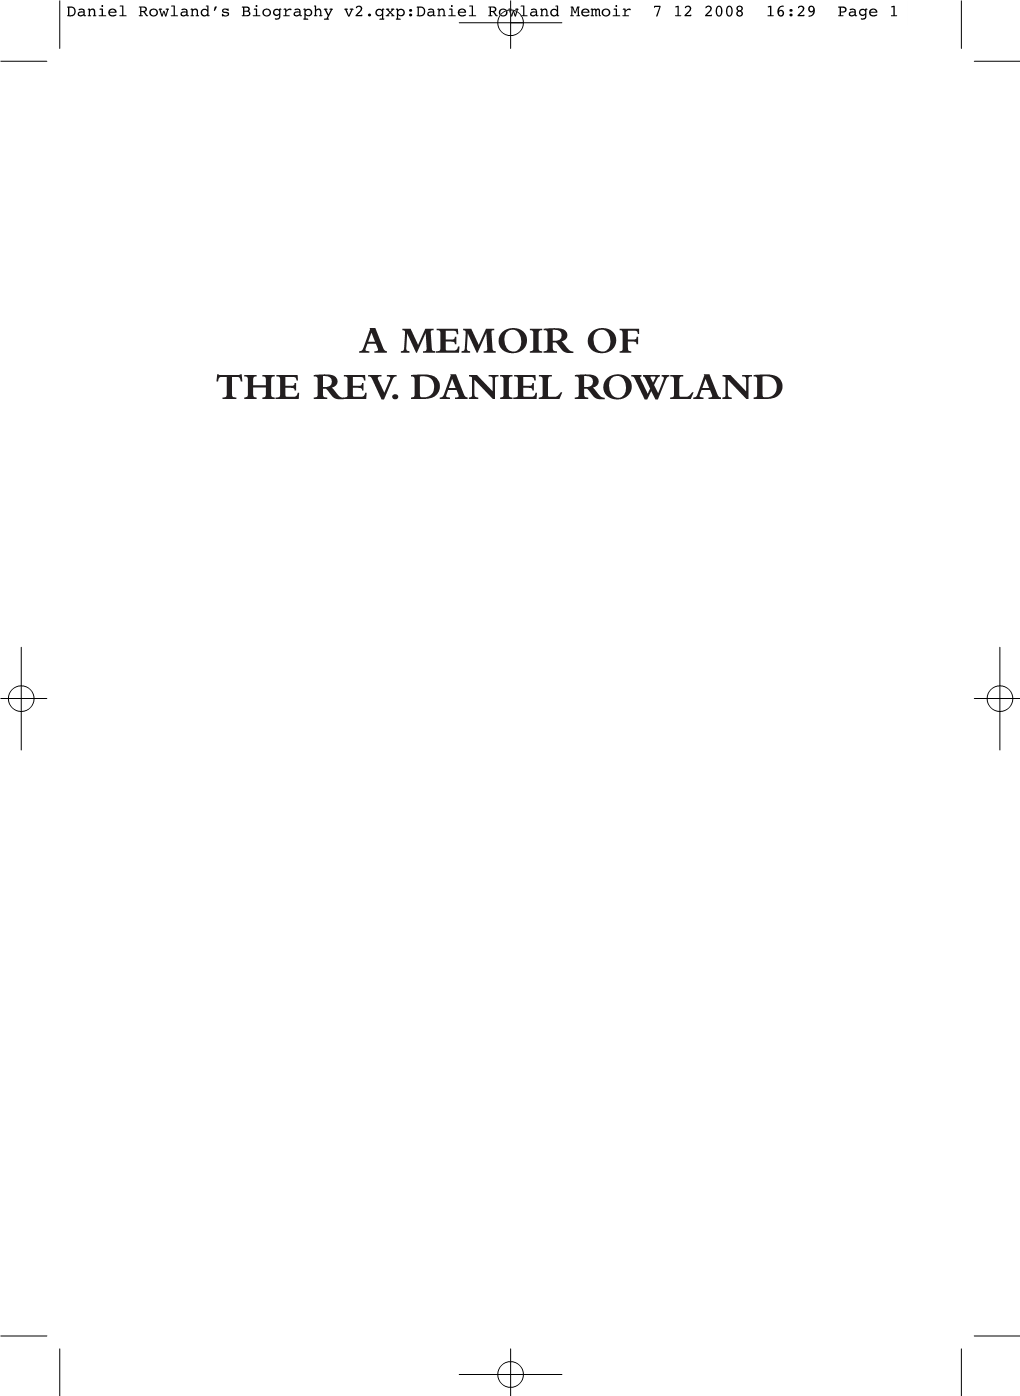 Memoir of Daniel Rowland